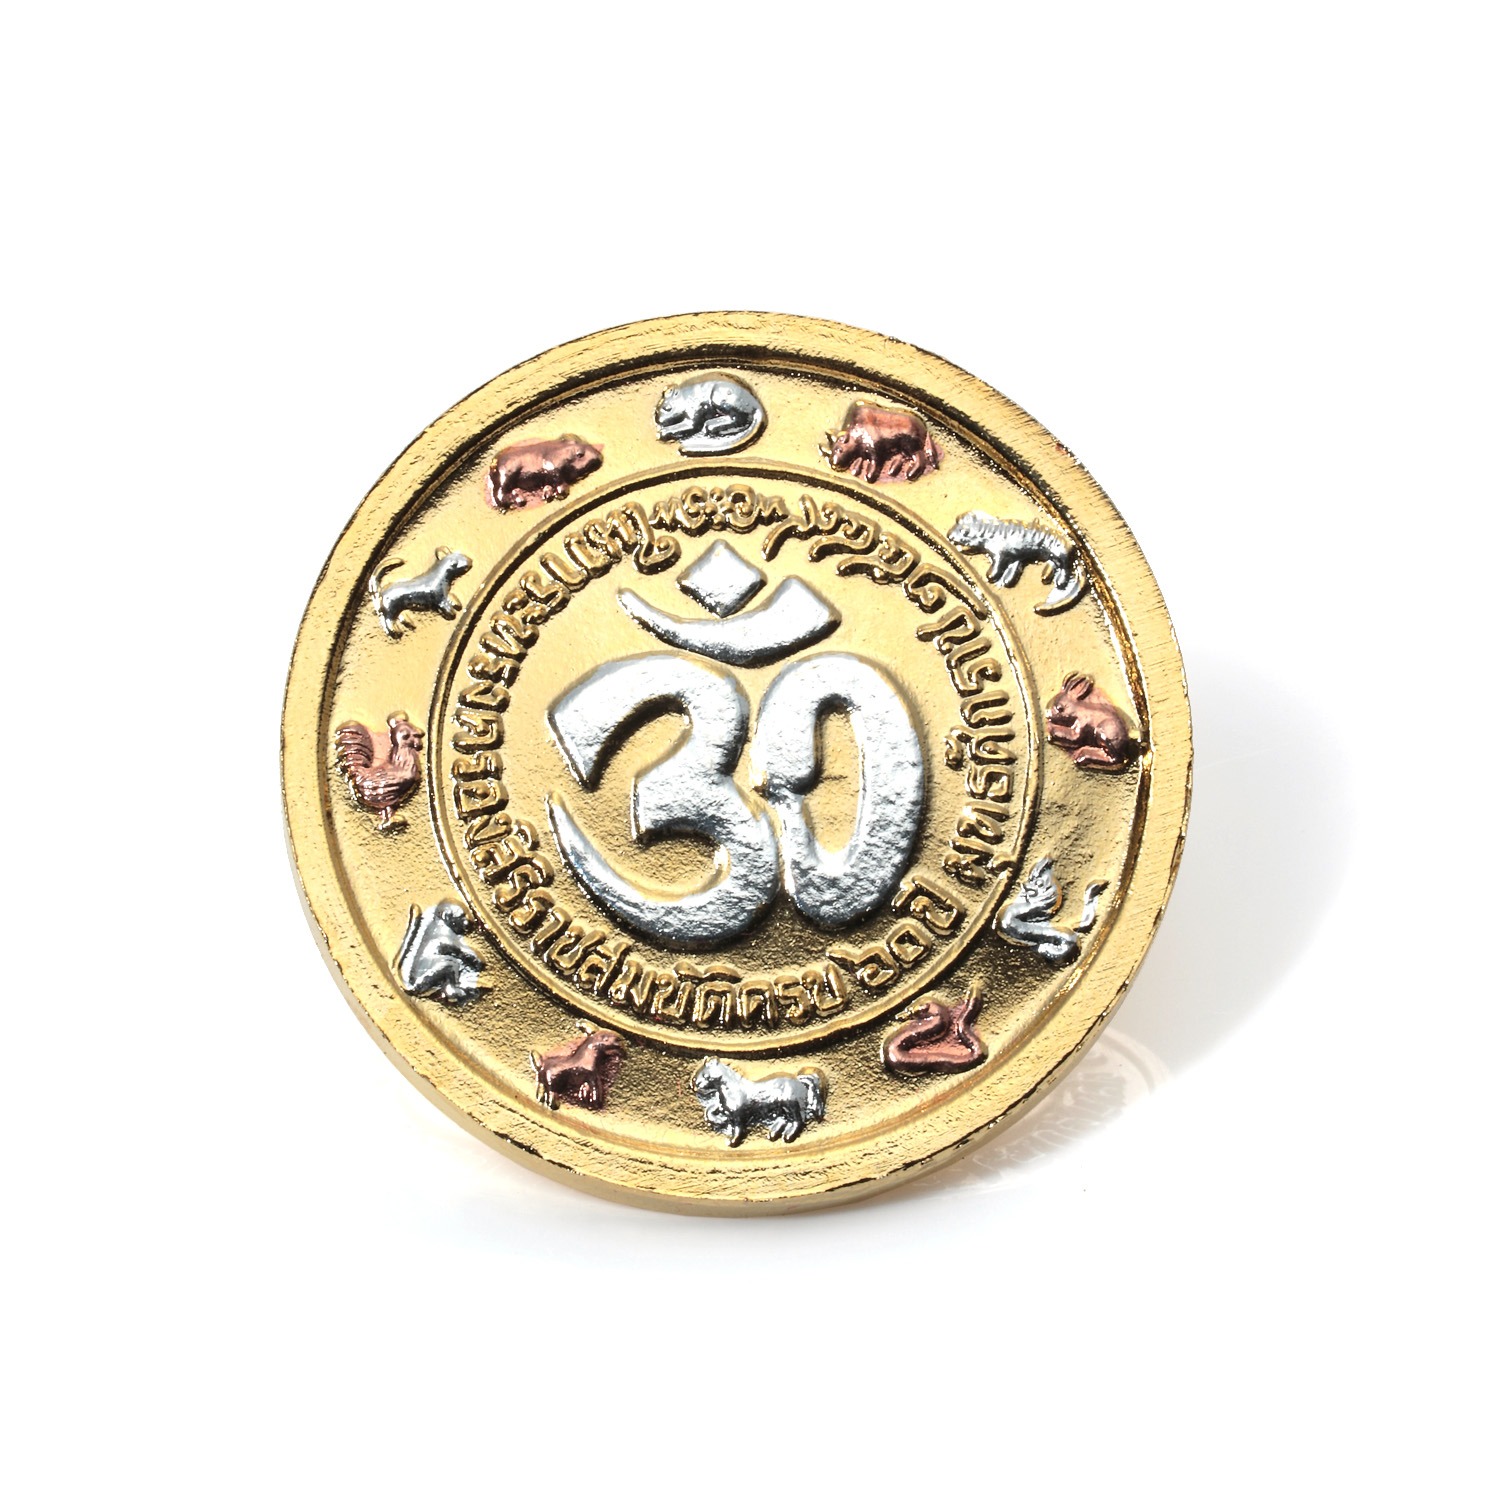 プラピカネ
コイン
巨万の富と大奇跡の神様
“金塊のお宝ビッグコイン
十二支パワーデザイン”